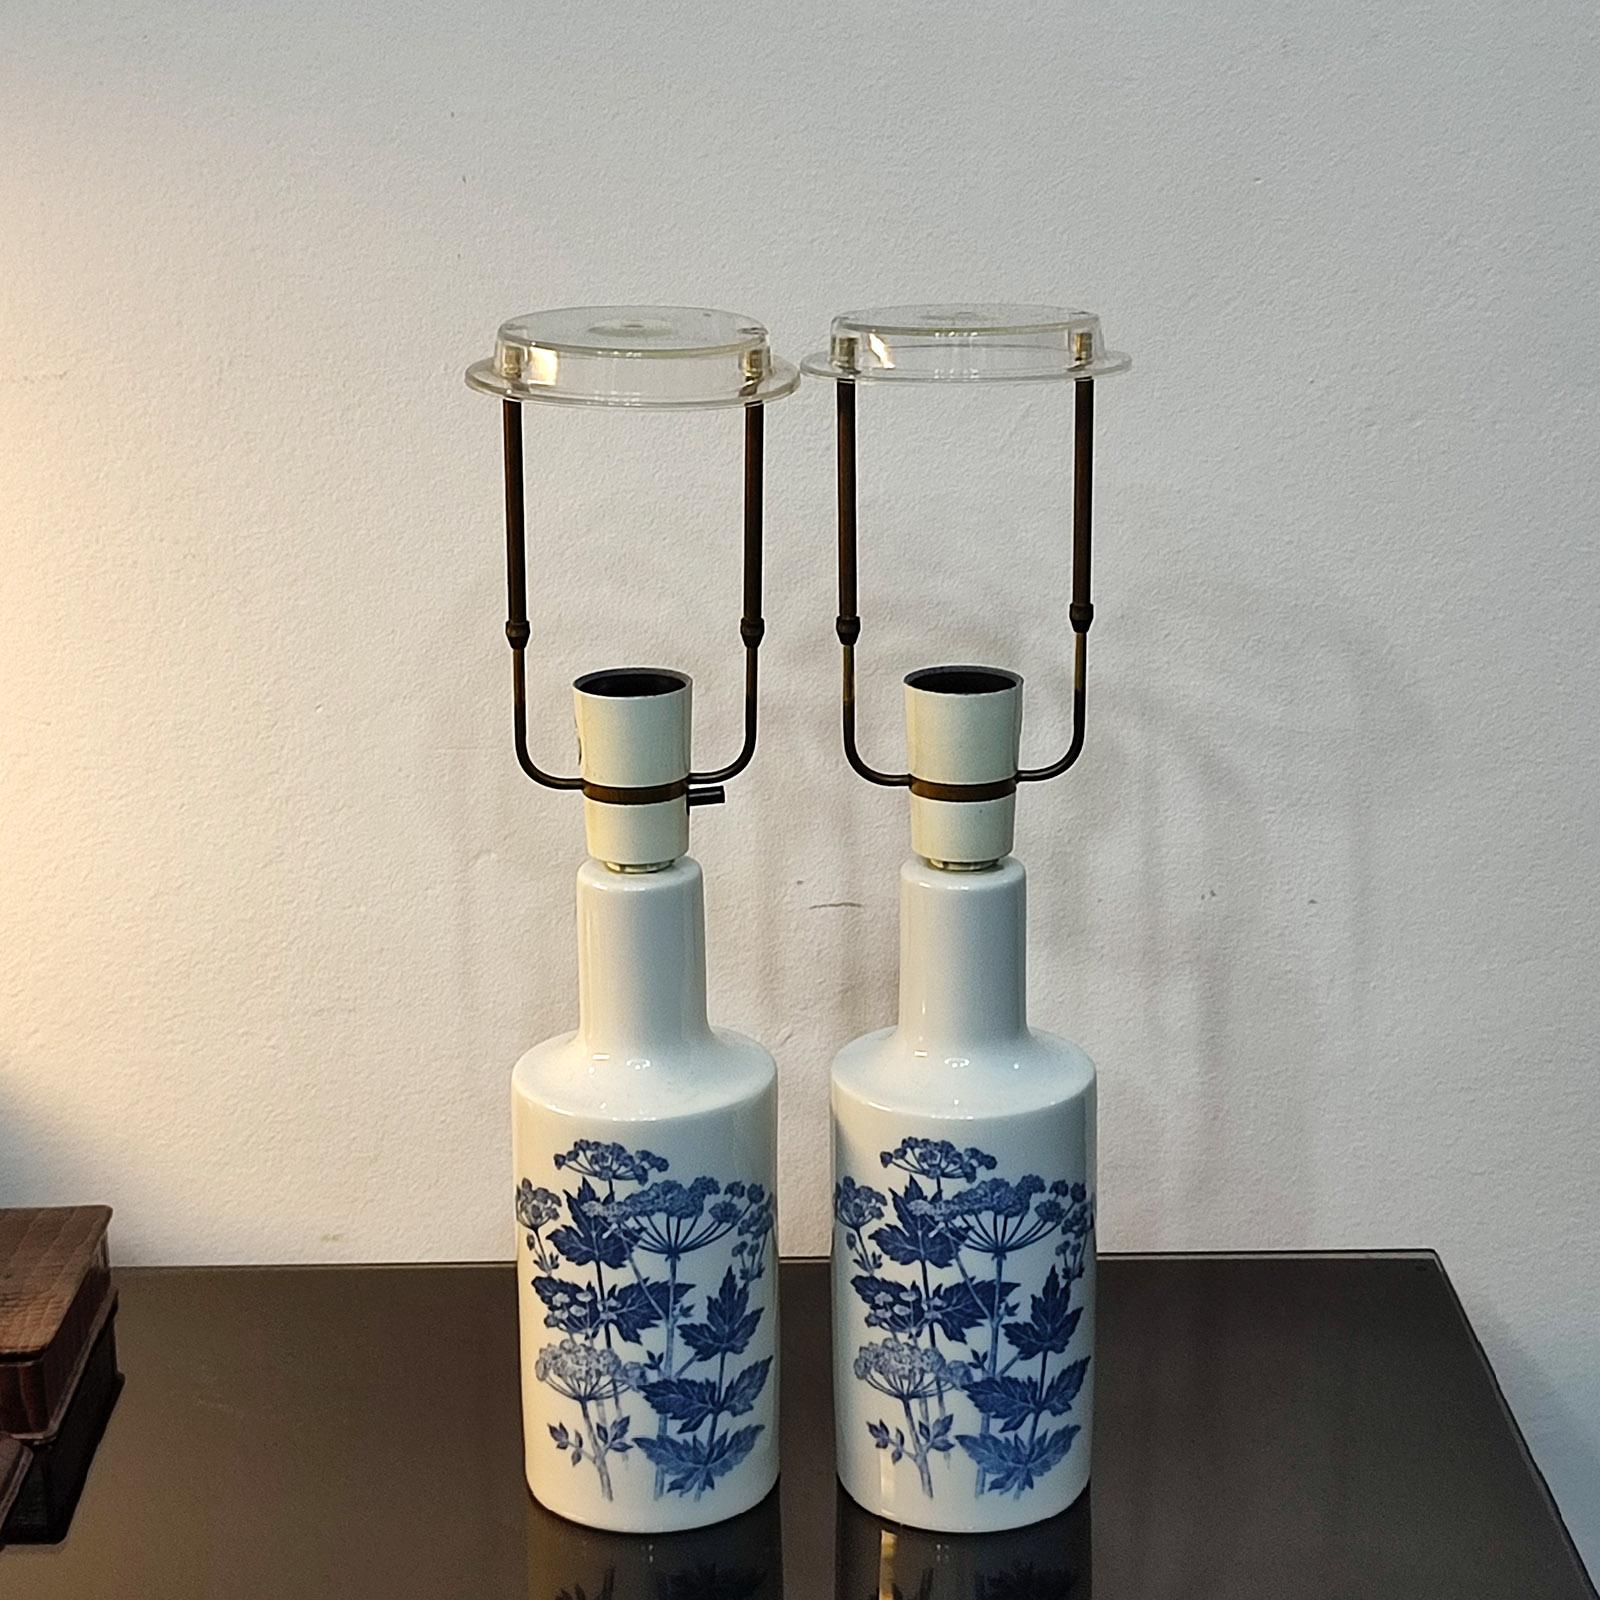 Scandinavian Modern Pair of Porcelain Table Lamps by Fog & Morup for Royal Copenhagen, Denmark 1960s For Sale